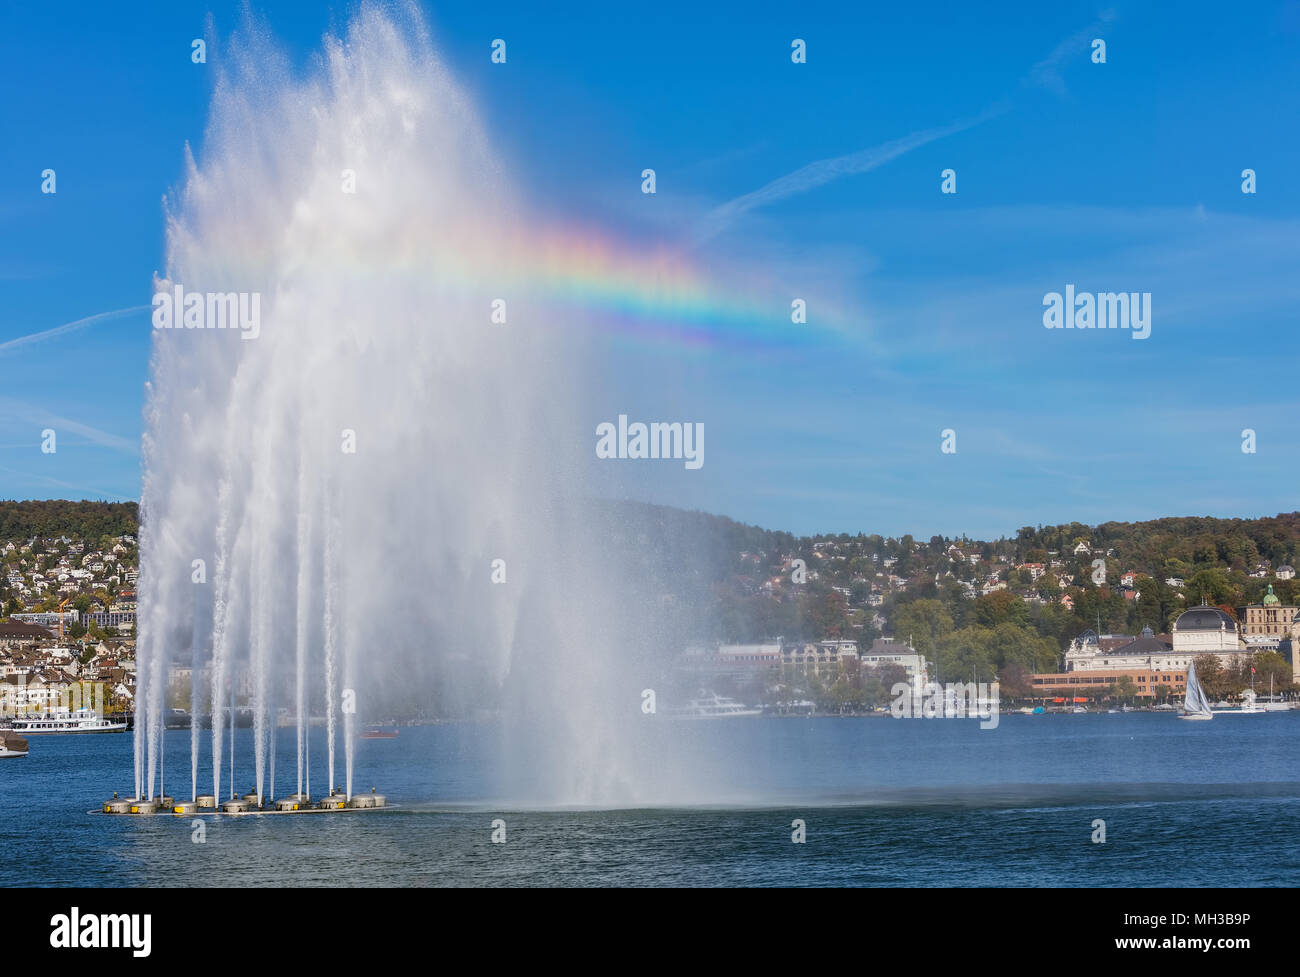 Ein Brunnen und Boote am Zürichsee in der Schweiz, in Gebäuden der Stadt  Zürich im Hintergrund. Das Bild wurde zu Beginn des Octob genommen  Stockfotografie - Alamy